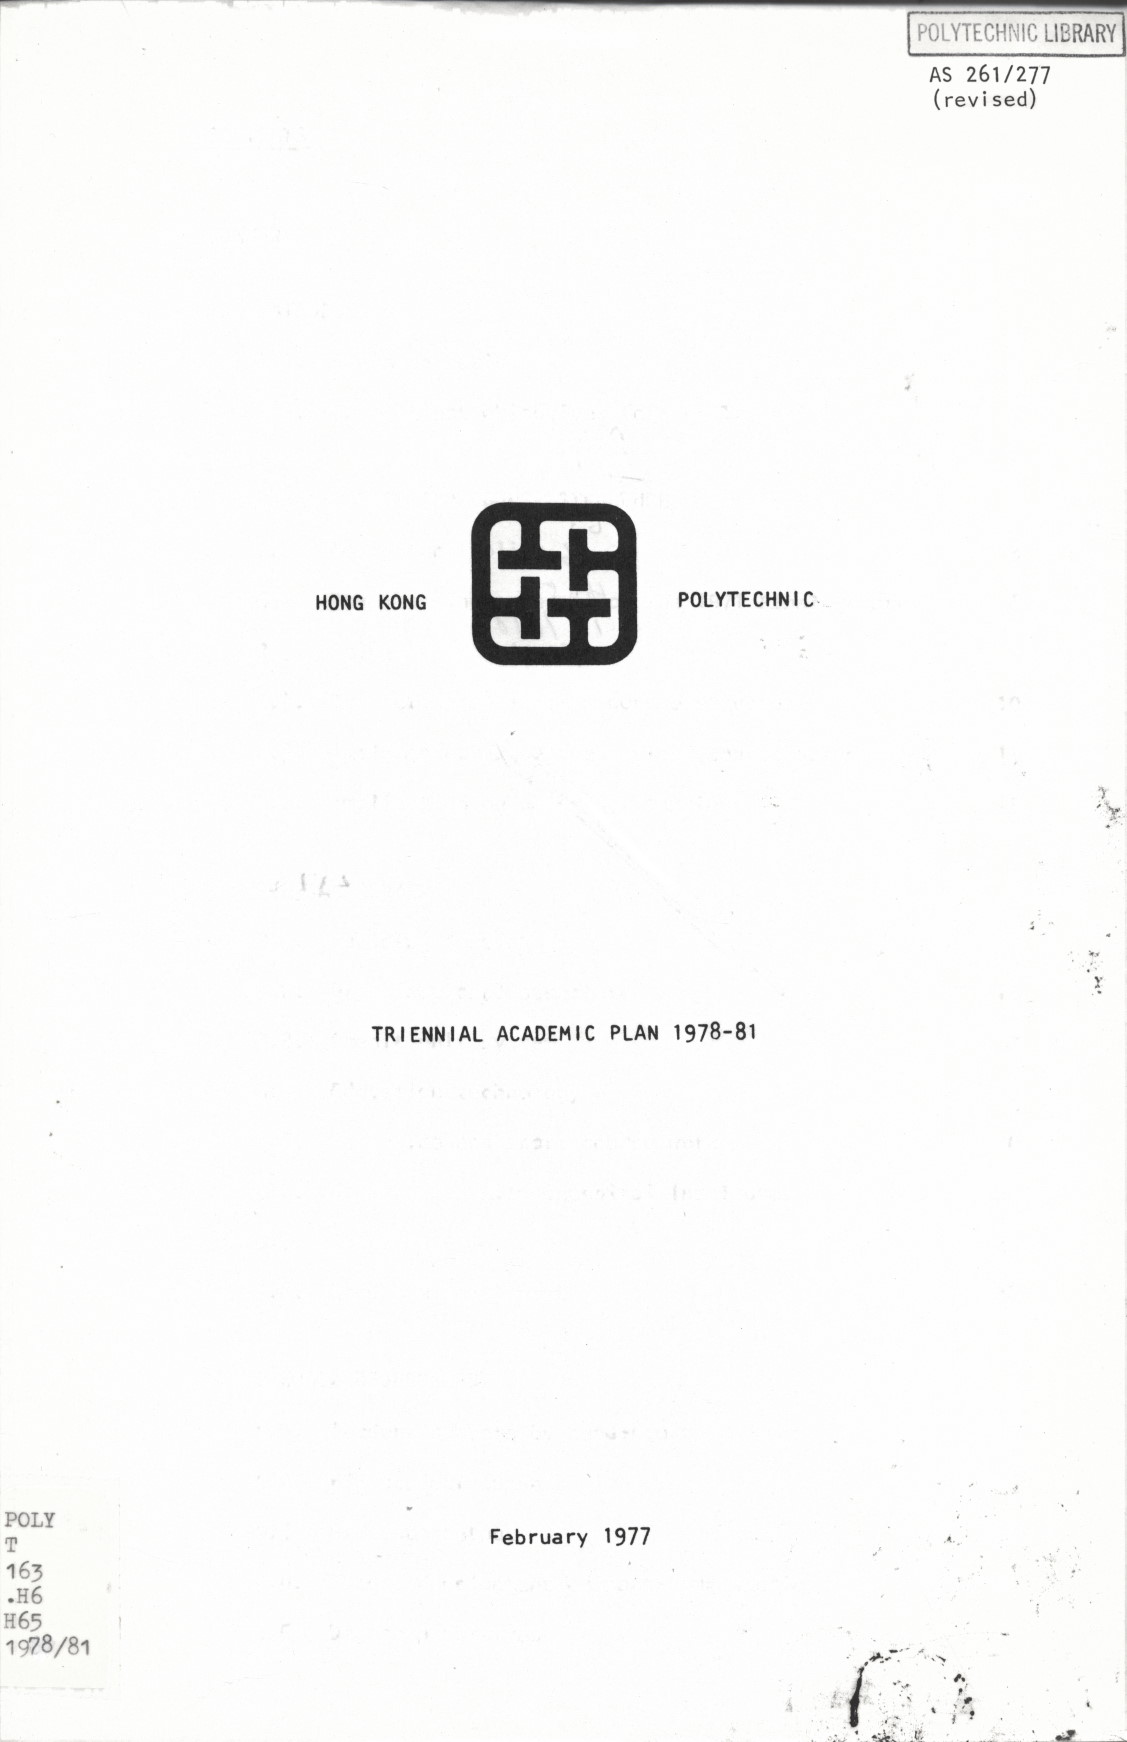 Triennial Academic plan 1978-81